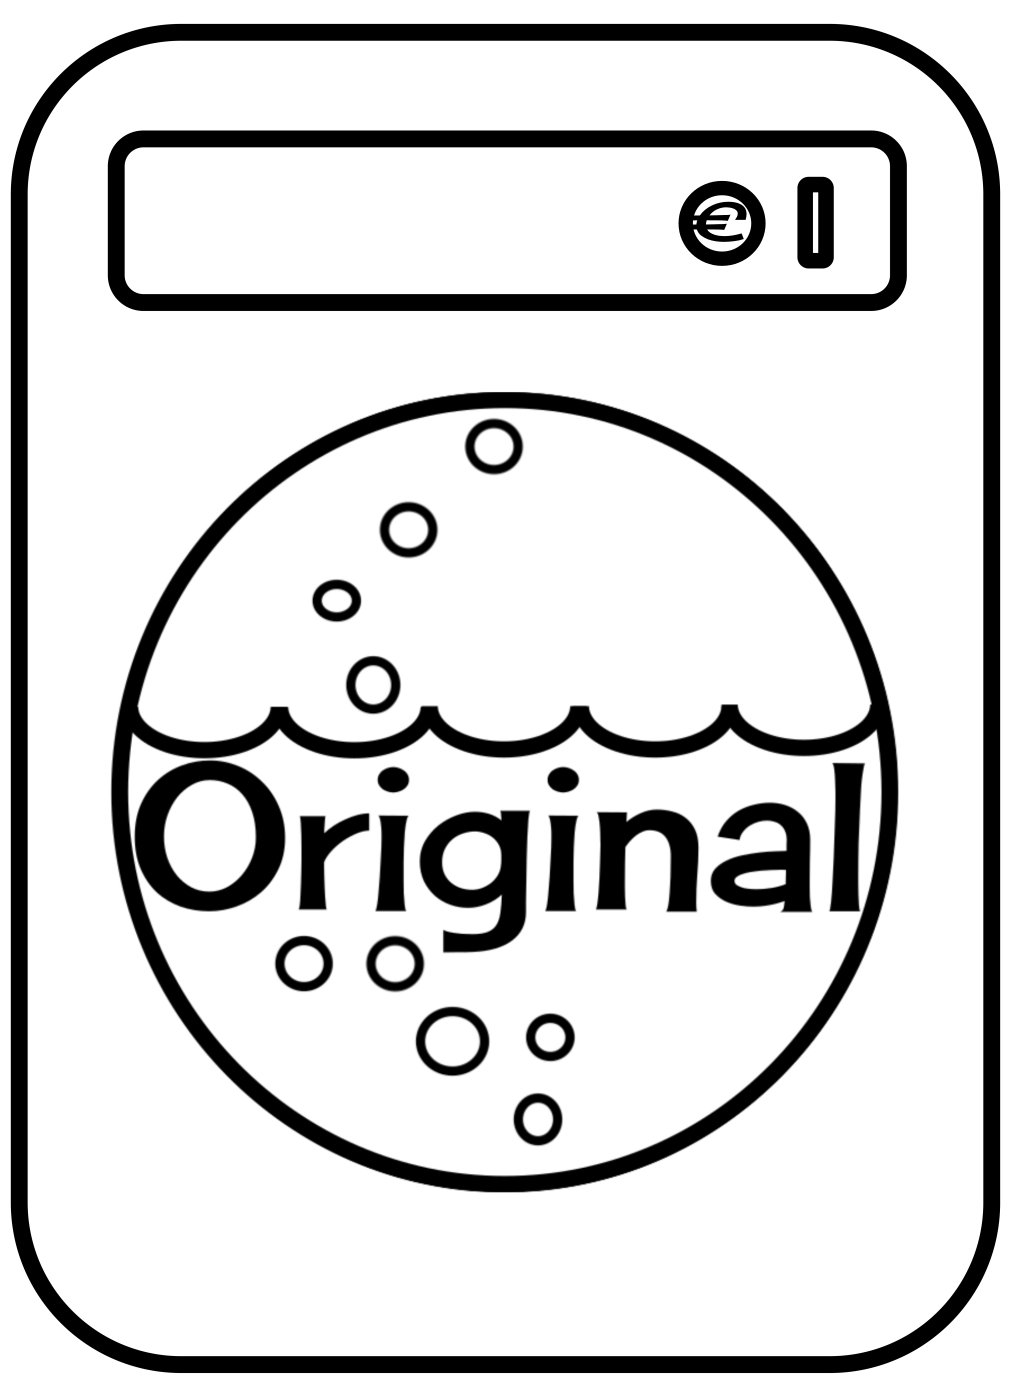 Final OWL logo coin